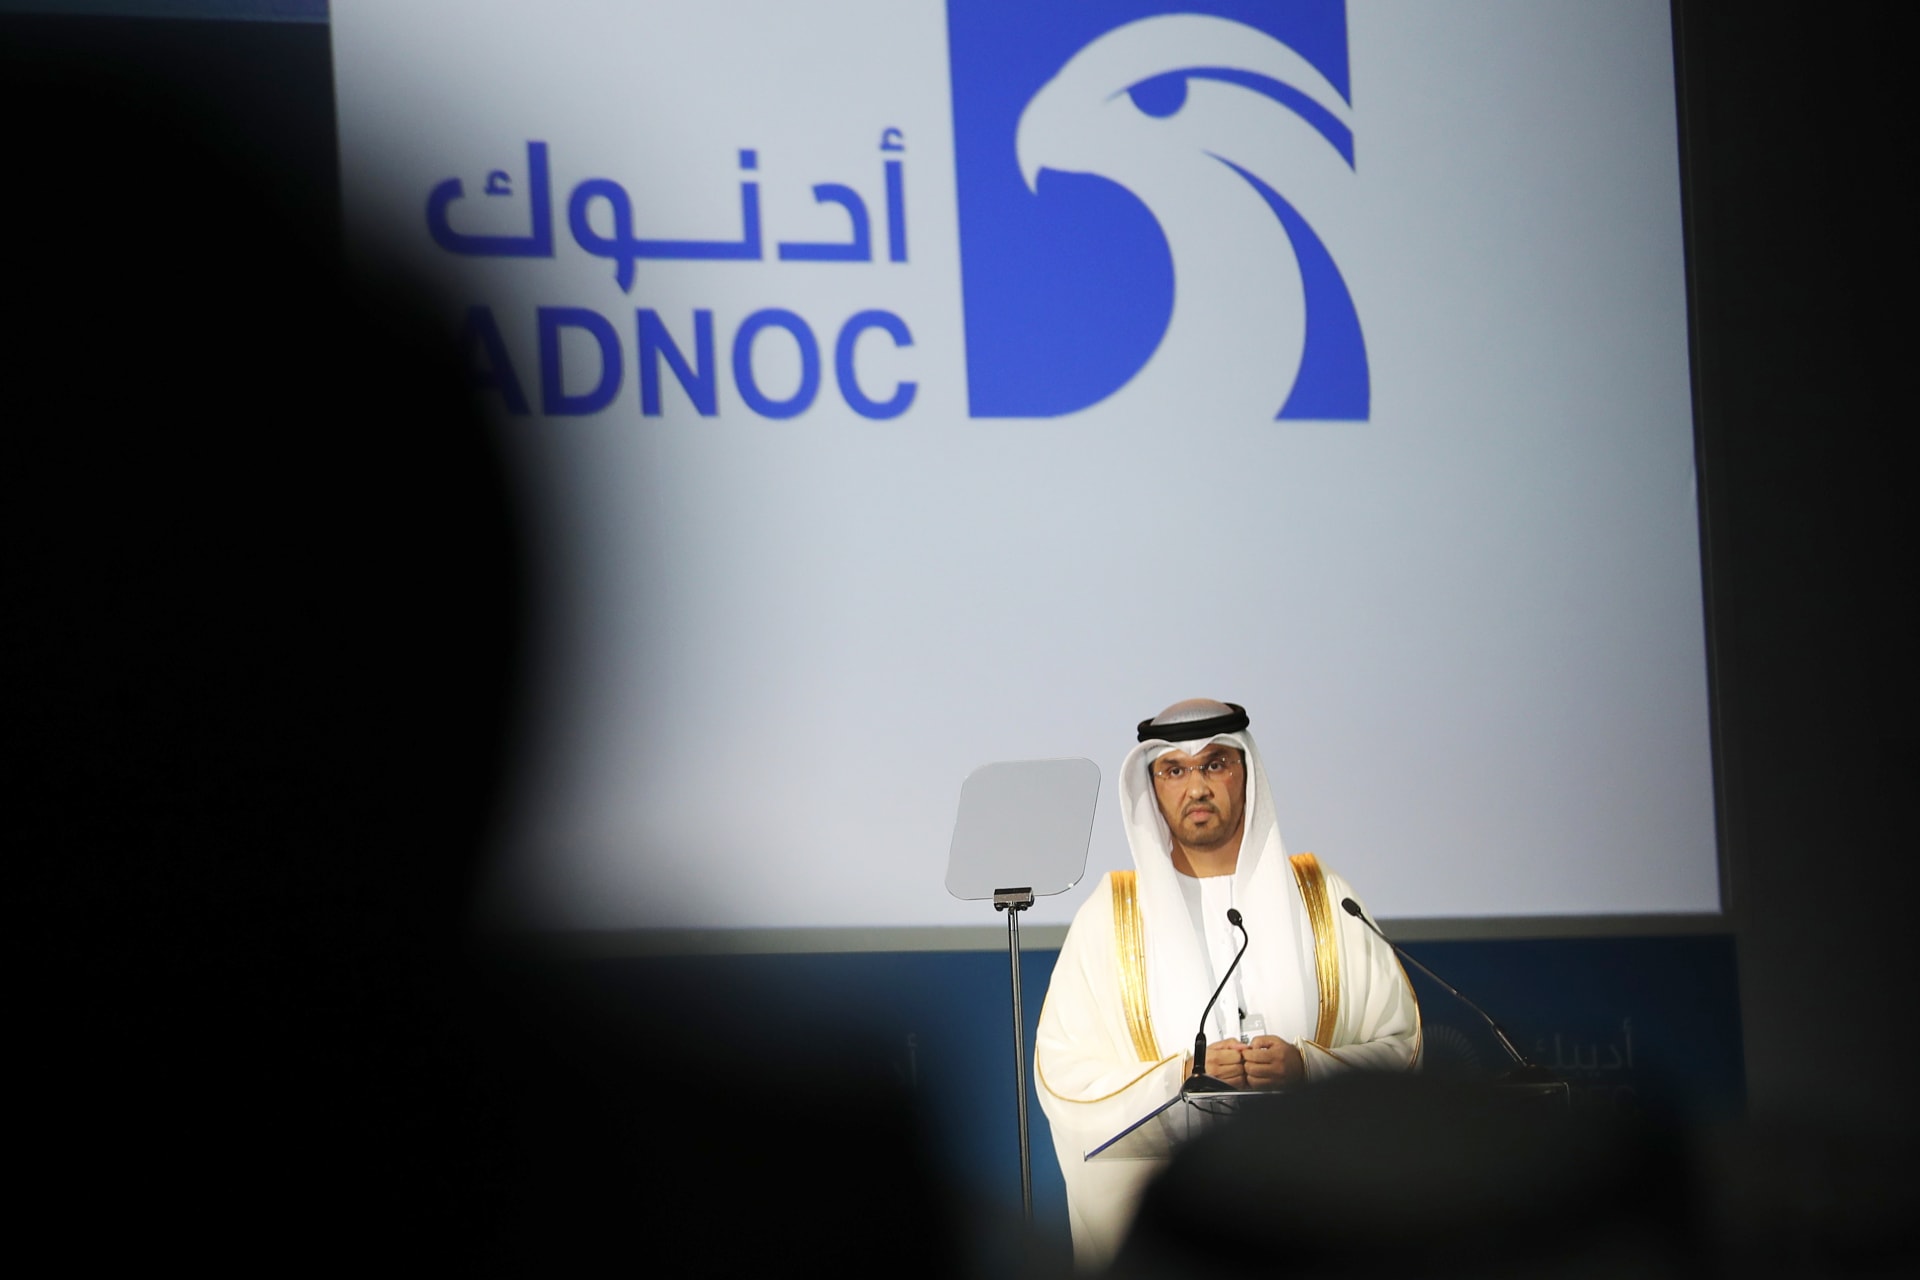 الرئيس التنفيذي لشركة أدنوك الاماراتية سلطان الجابر في مؤتمر 